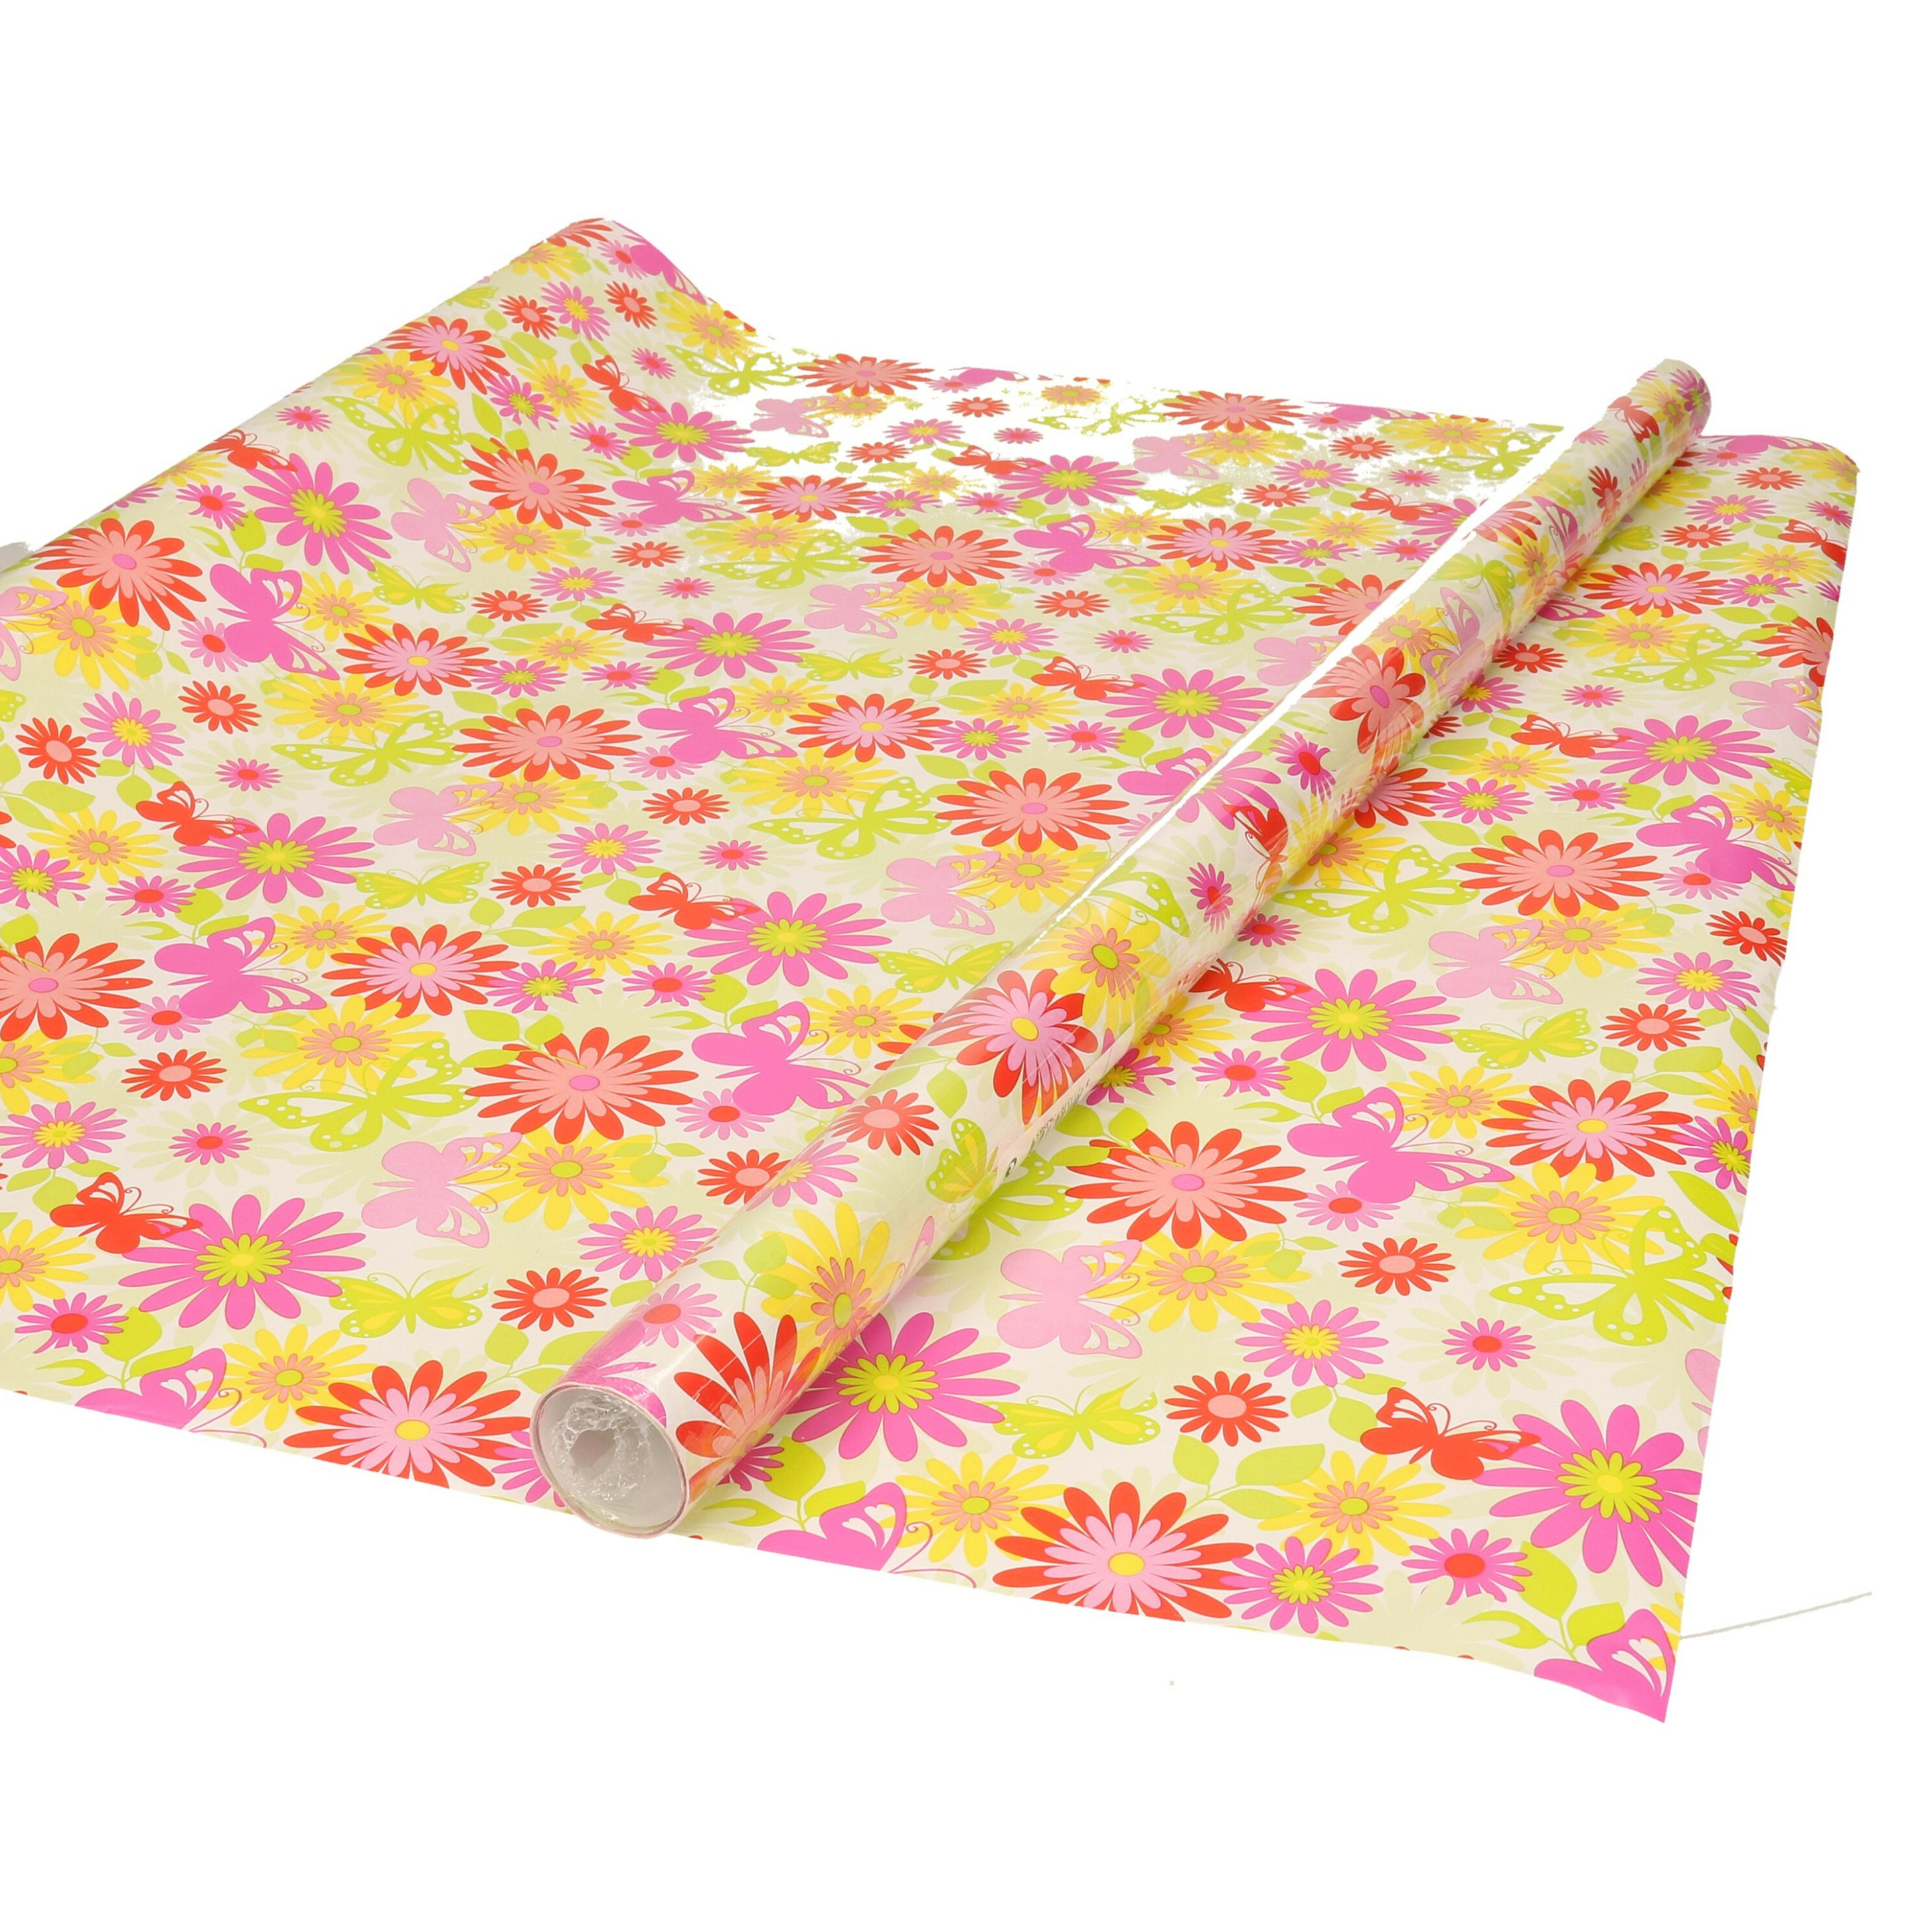 Inpakpapier-cadeaupapier wit met gekleurde bloemen design 200 x 70 cm